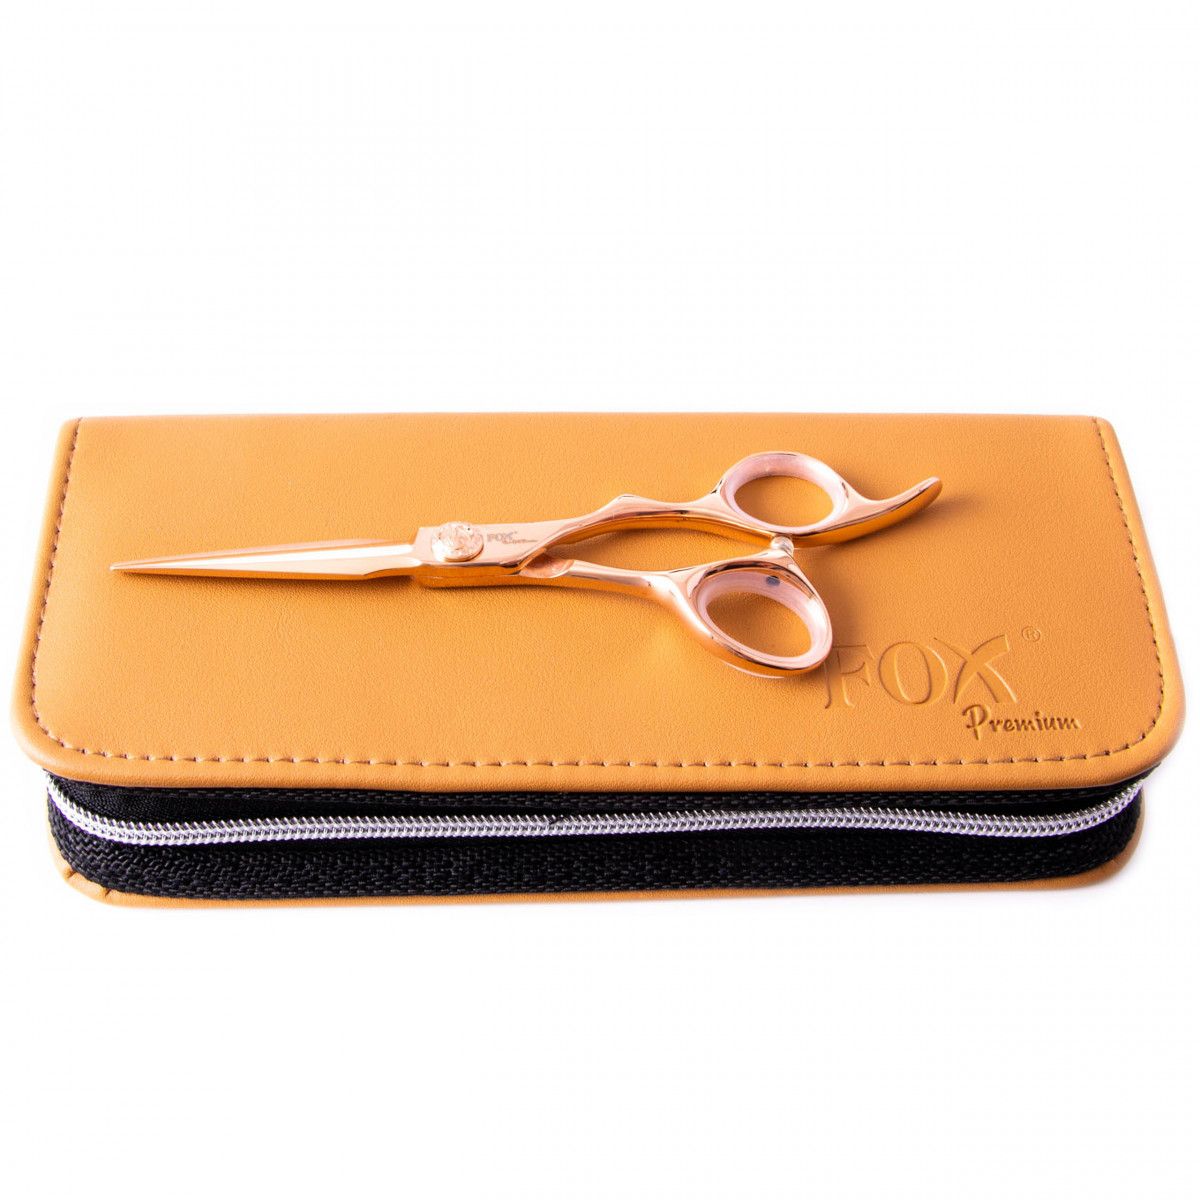 Fox Rose Gold Premium stalowe nożyczki do strzyżenia włosów